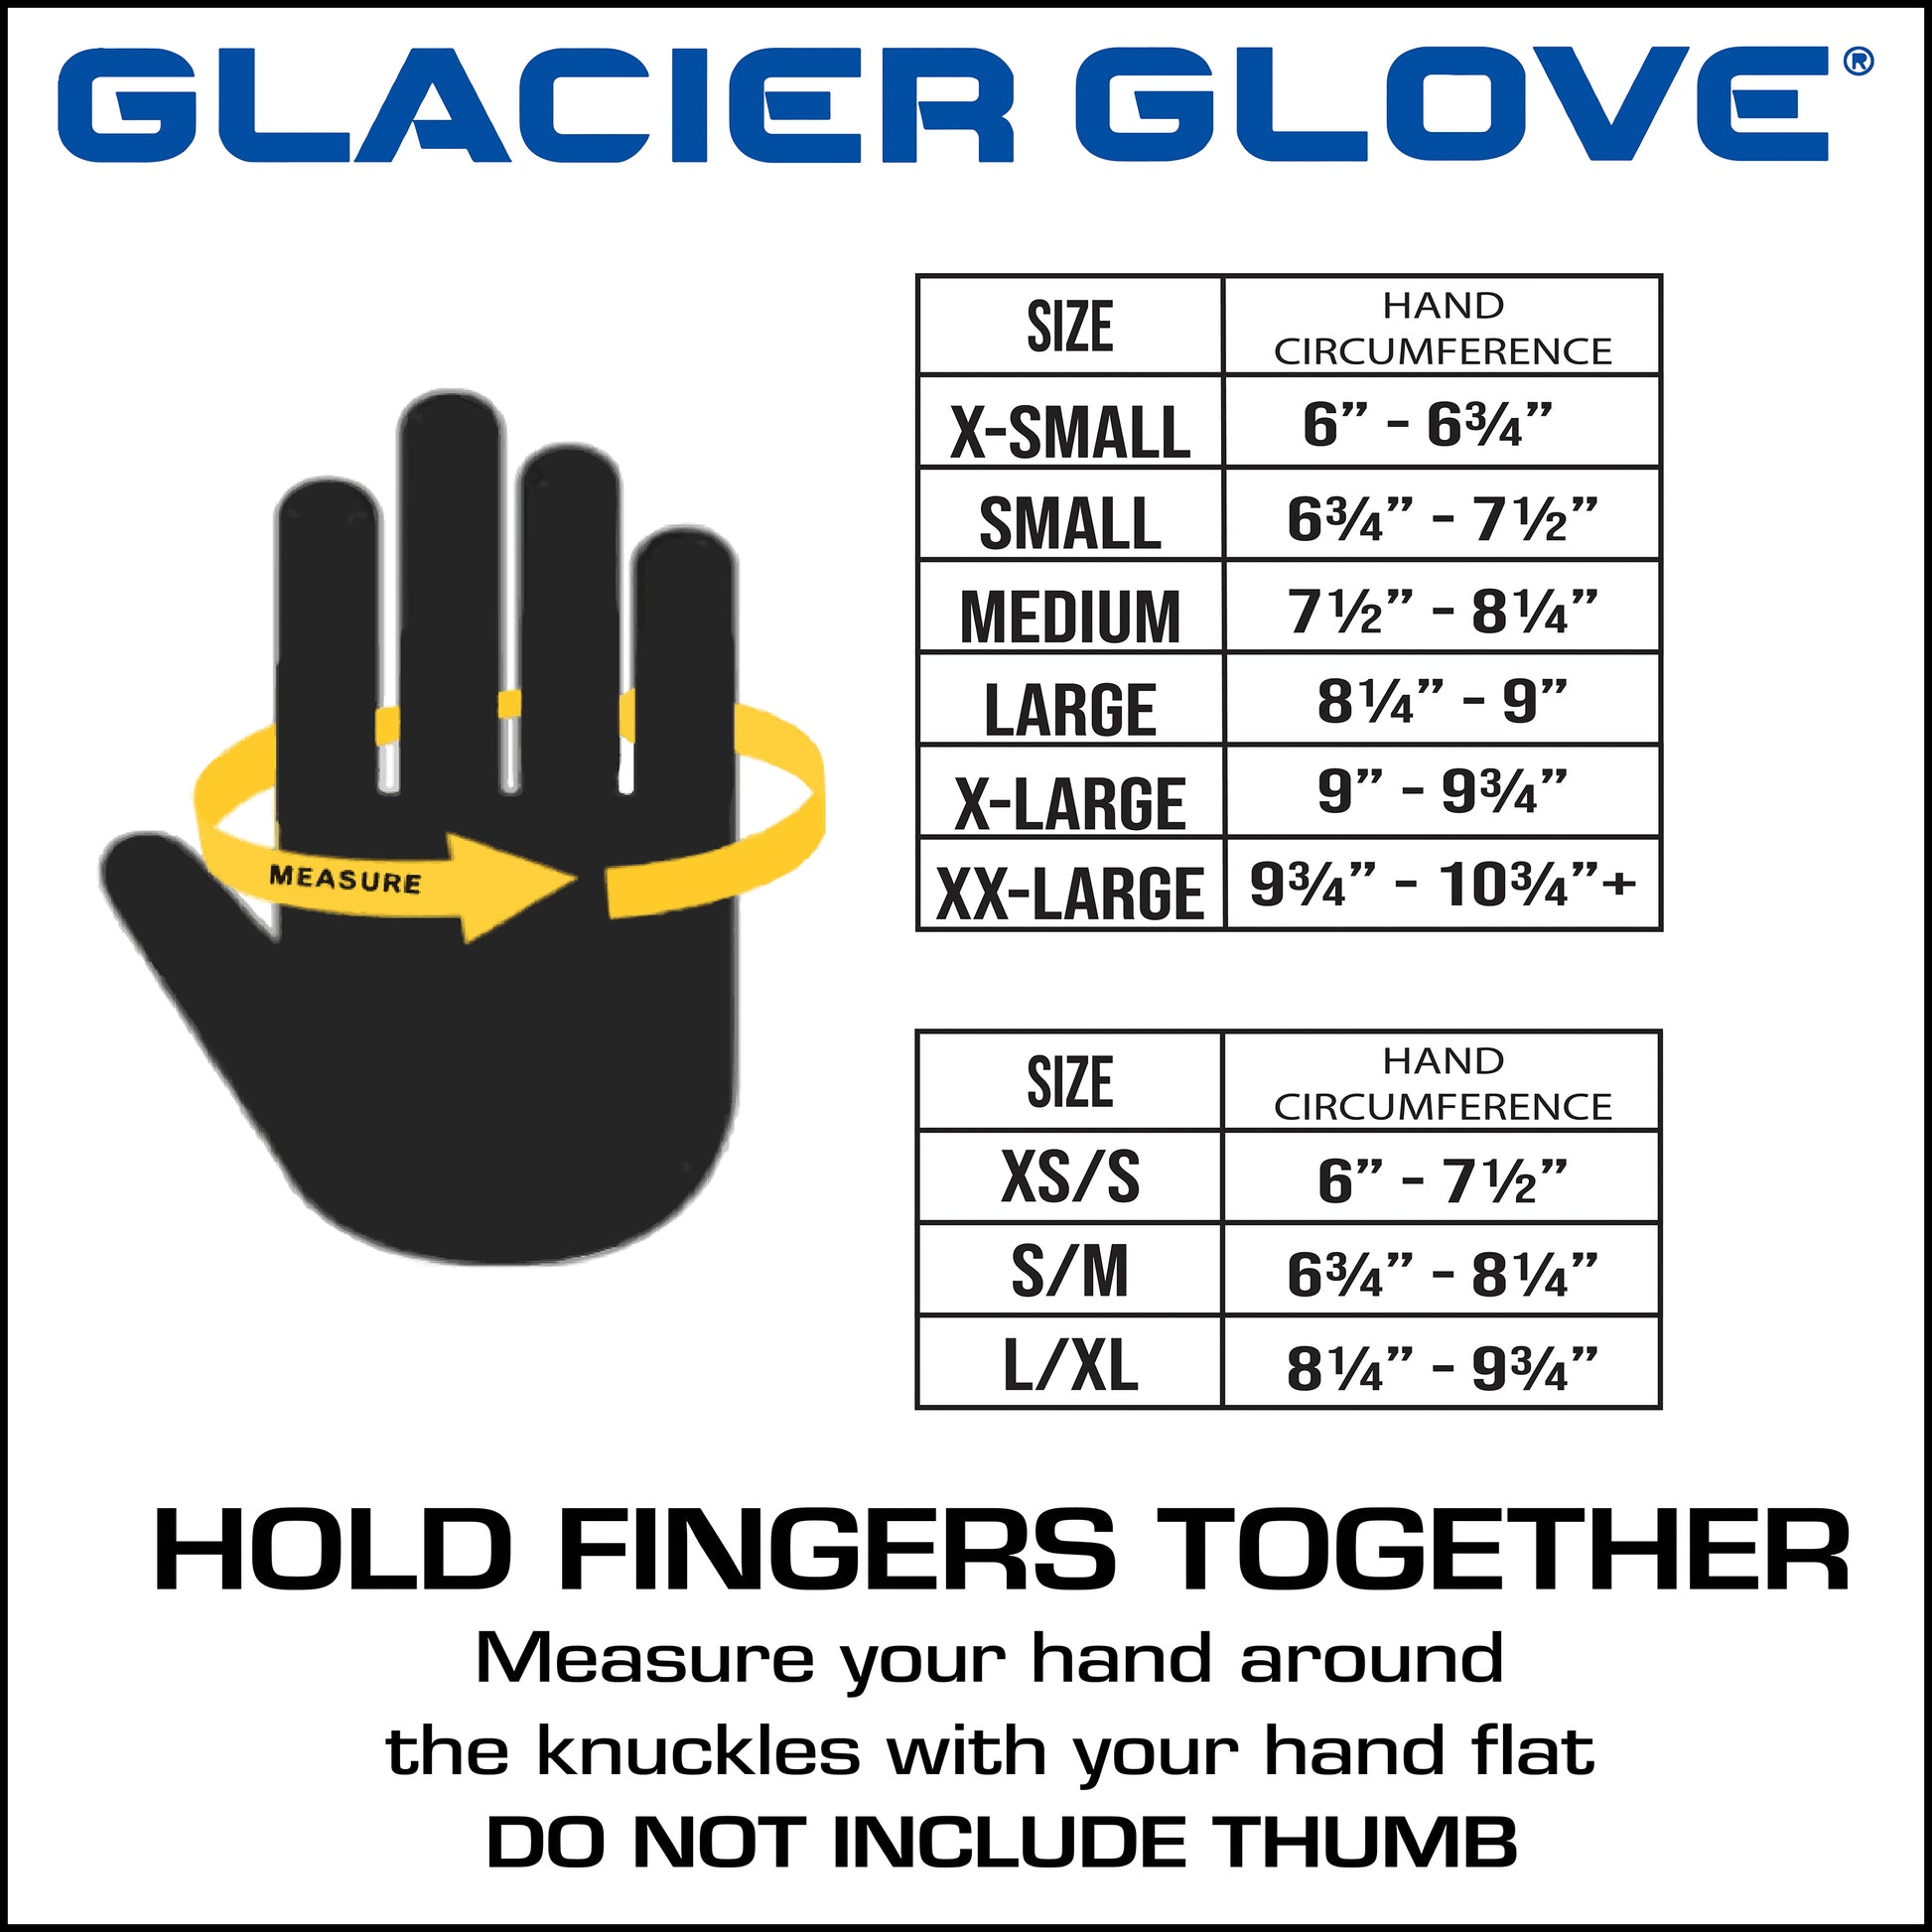 Glacier Glove Ascension Bay Fingerless Sun Gloves : Target